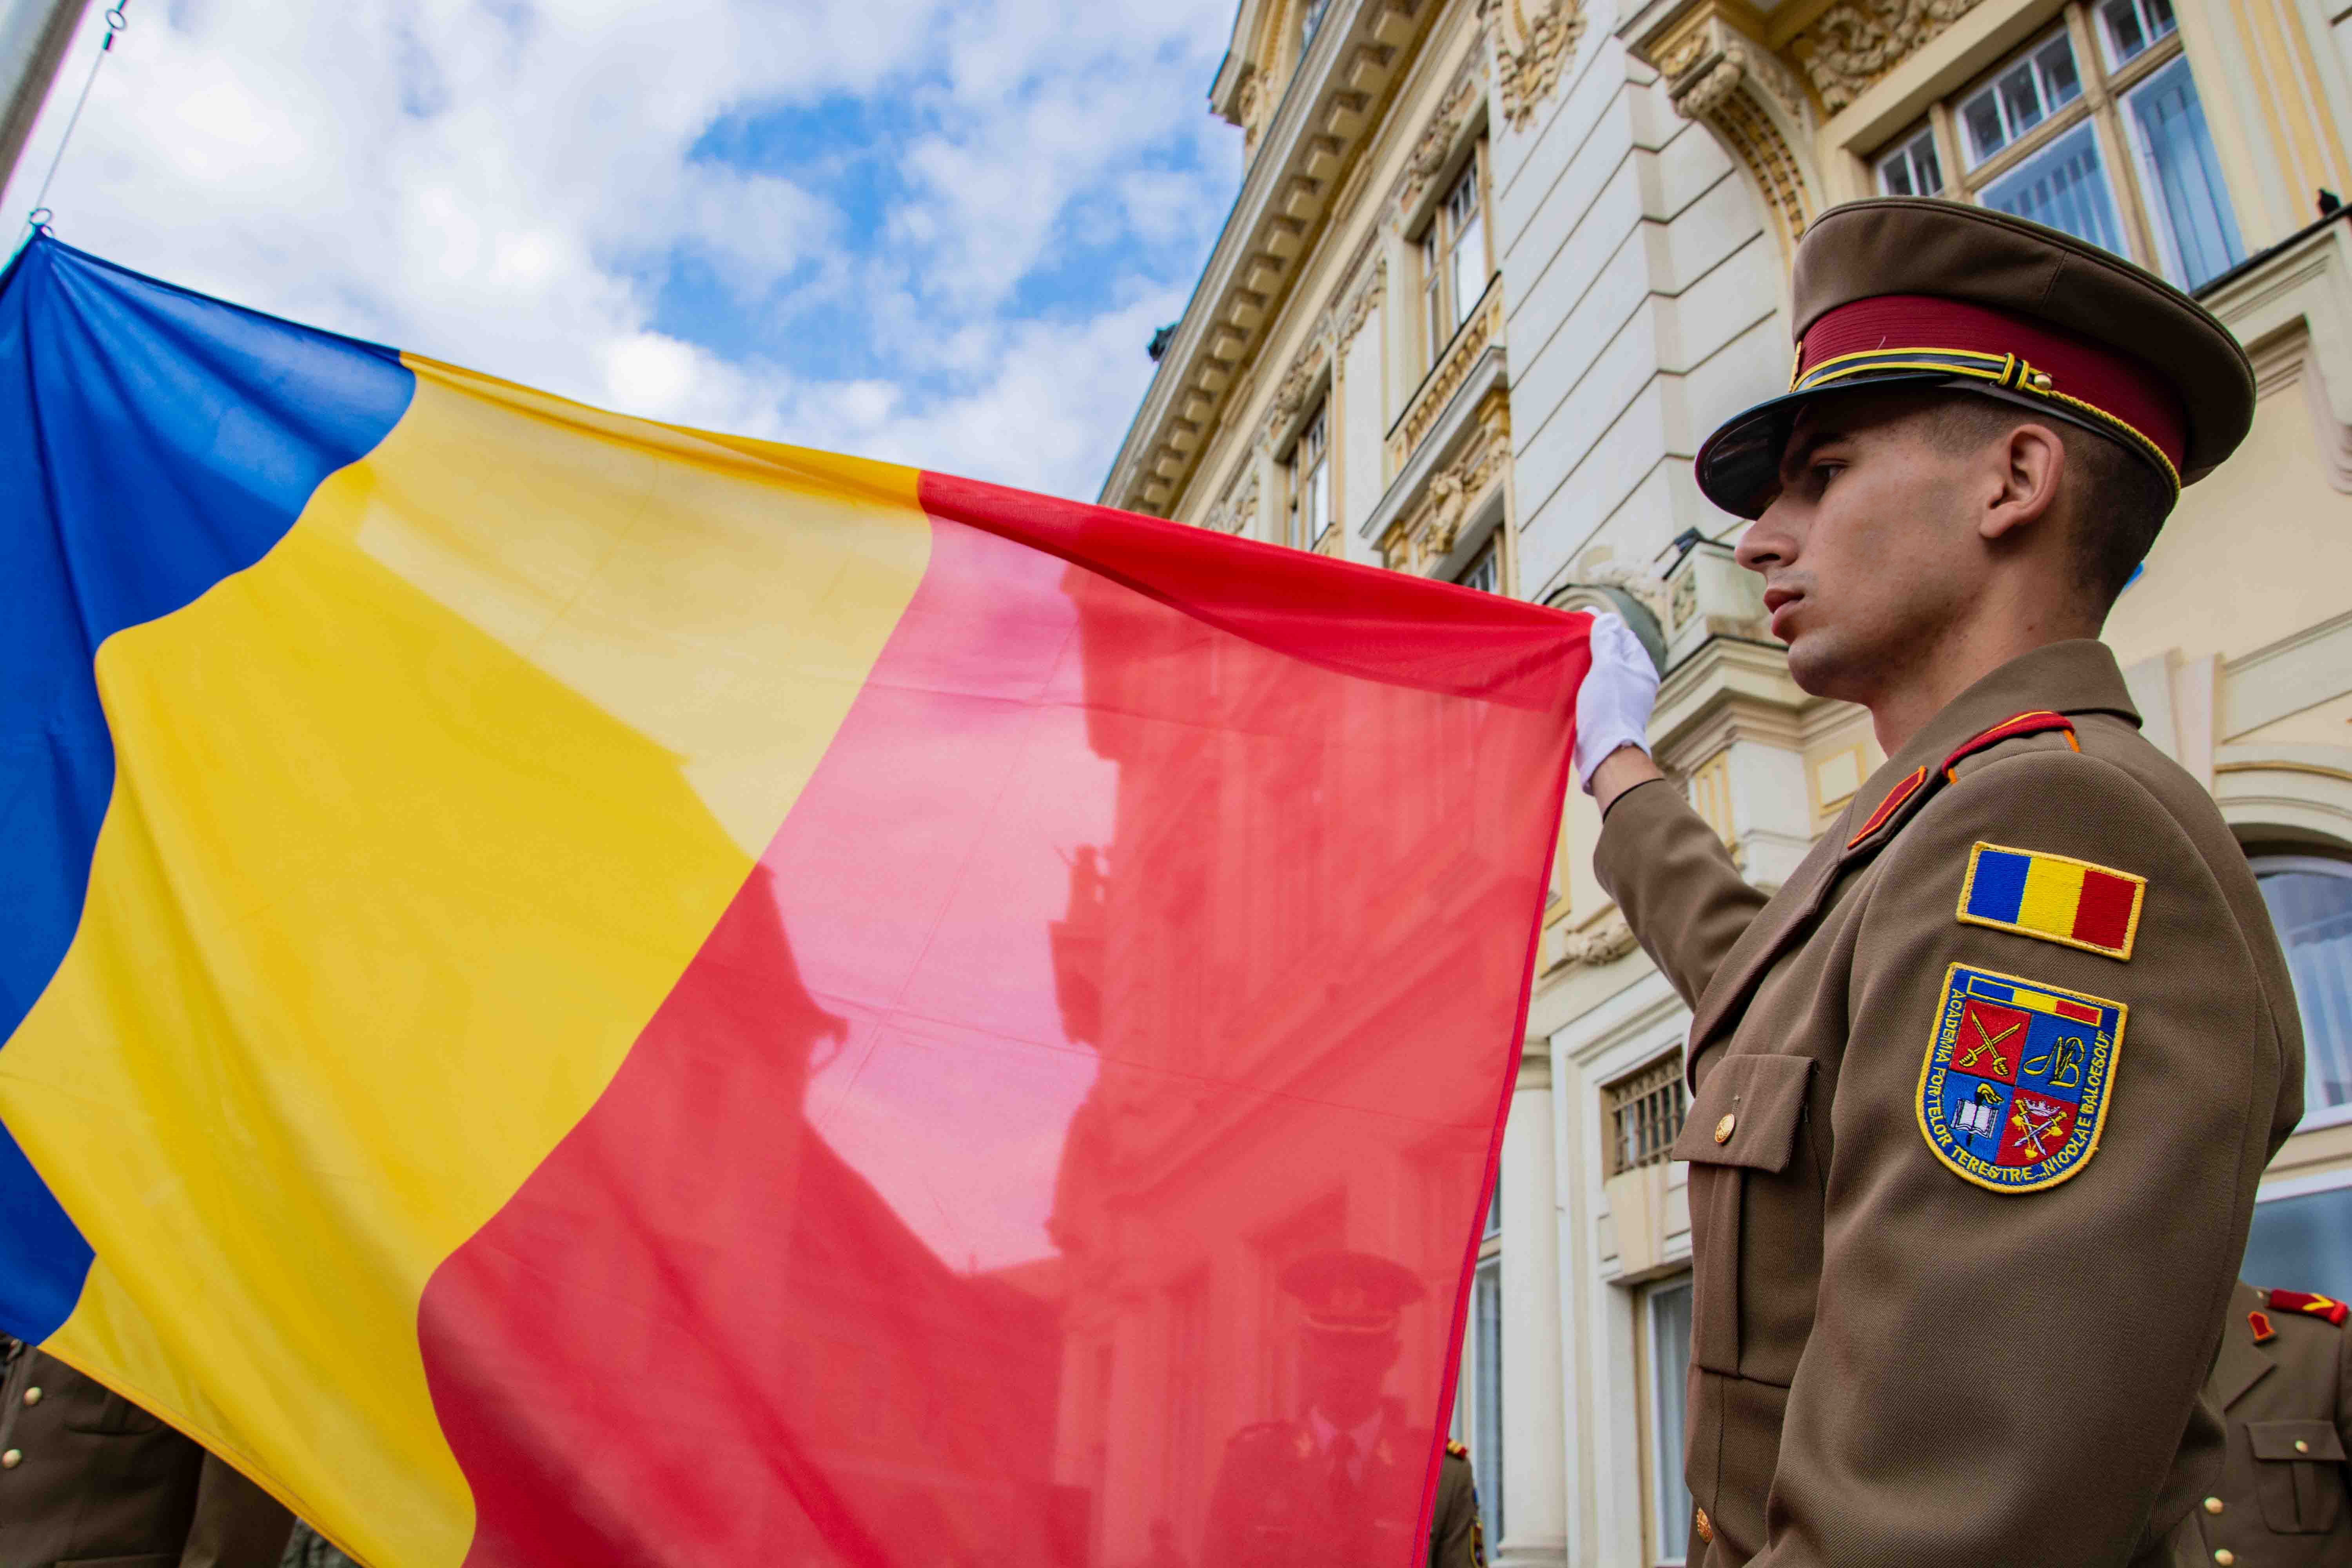 Steagul României sfințit de ÎPS Laurențiu Streza va fi arborat în Piața Mare din Sibiu de Ziua Drapelului Național